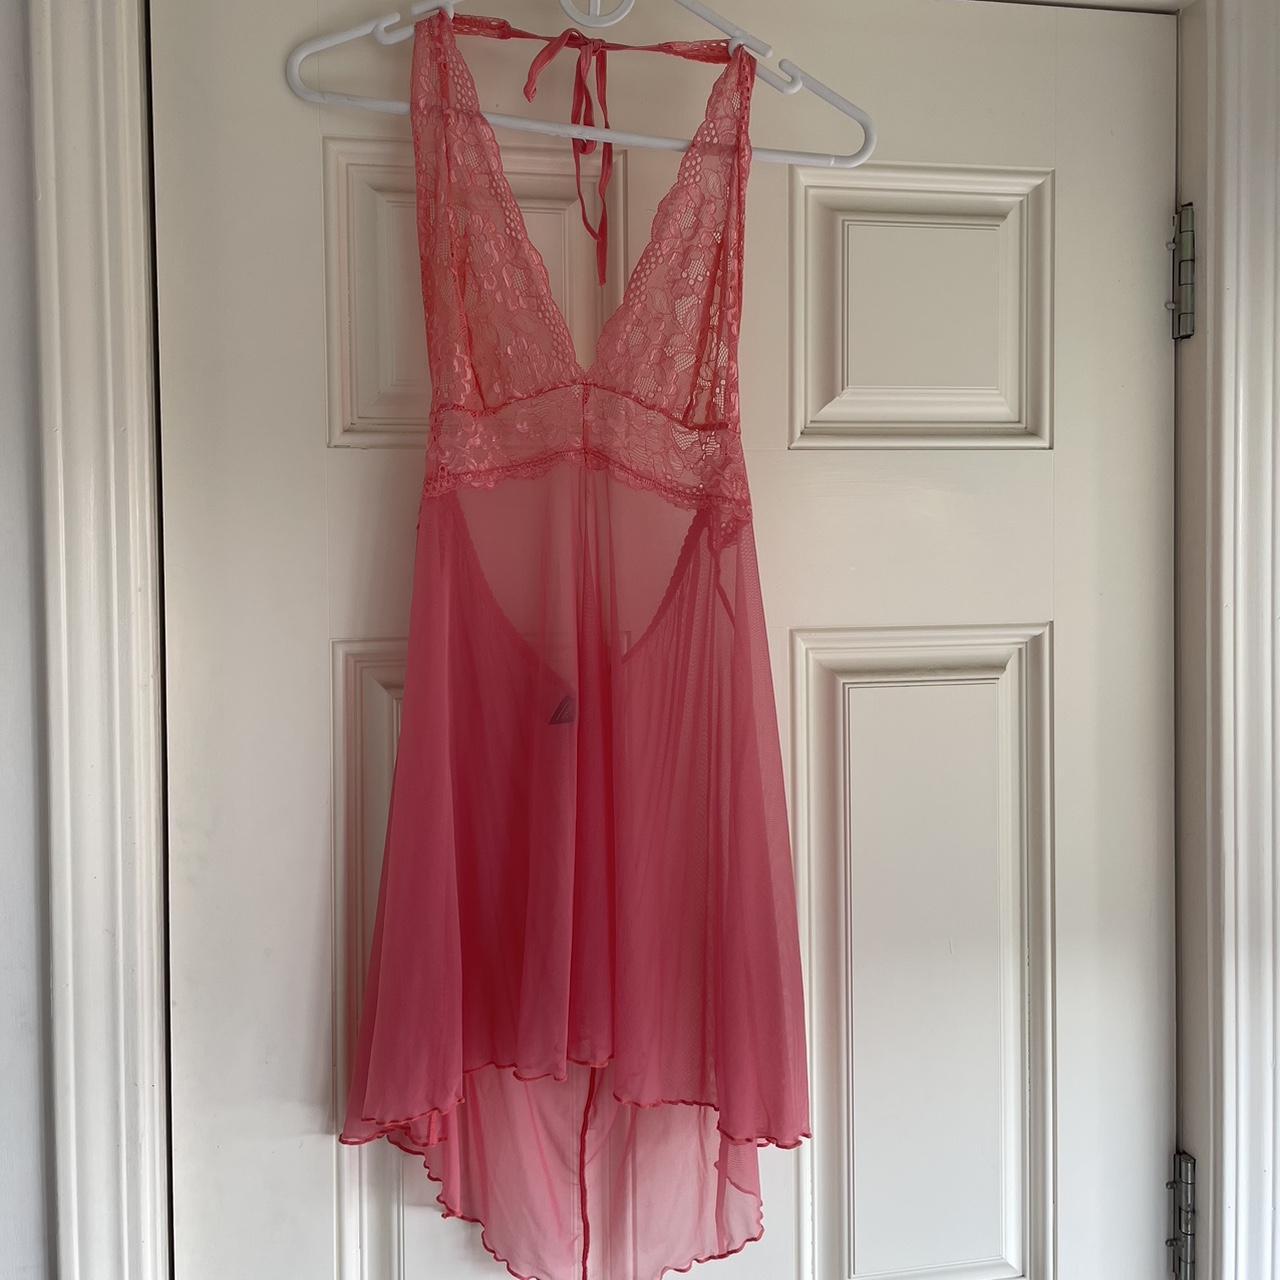 Escanté lingerie slip dress baby pink lace mesh - Depop